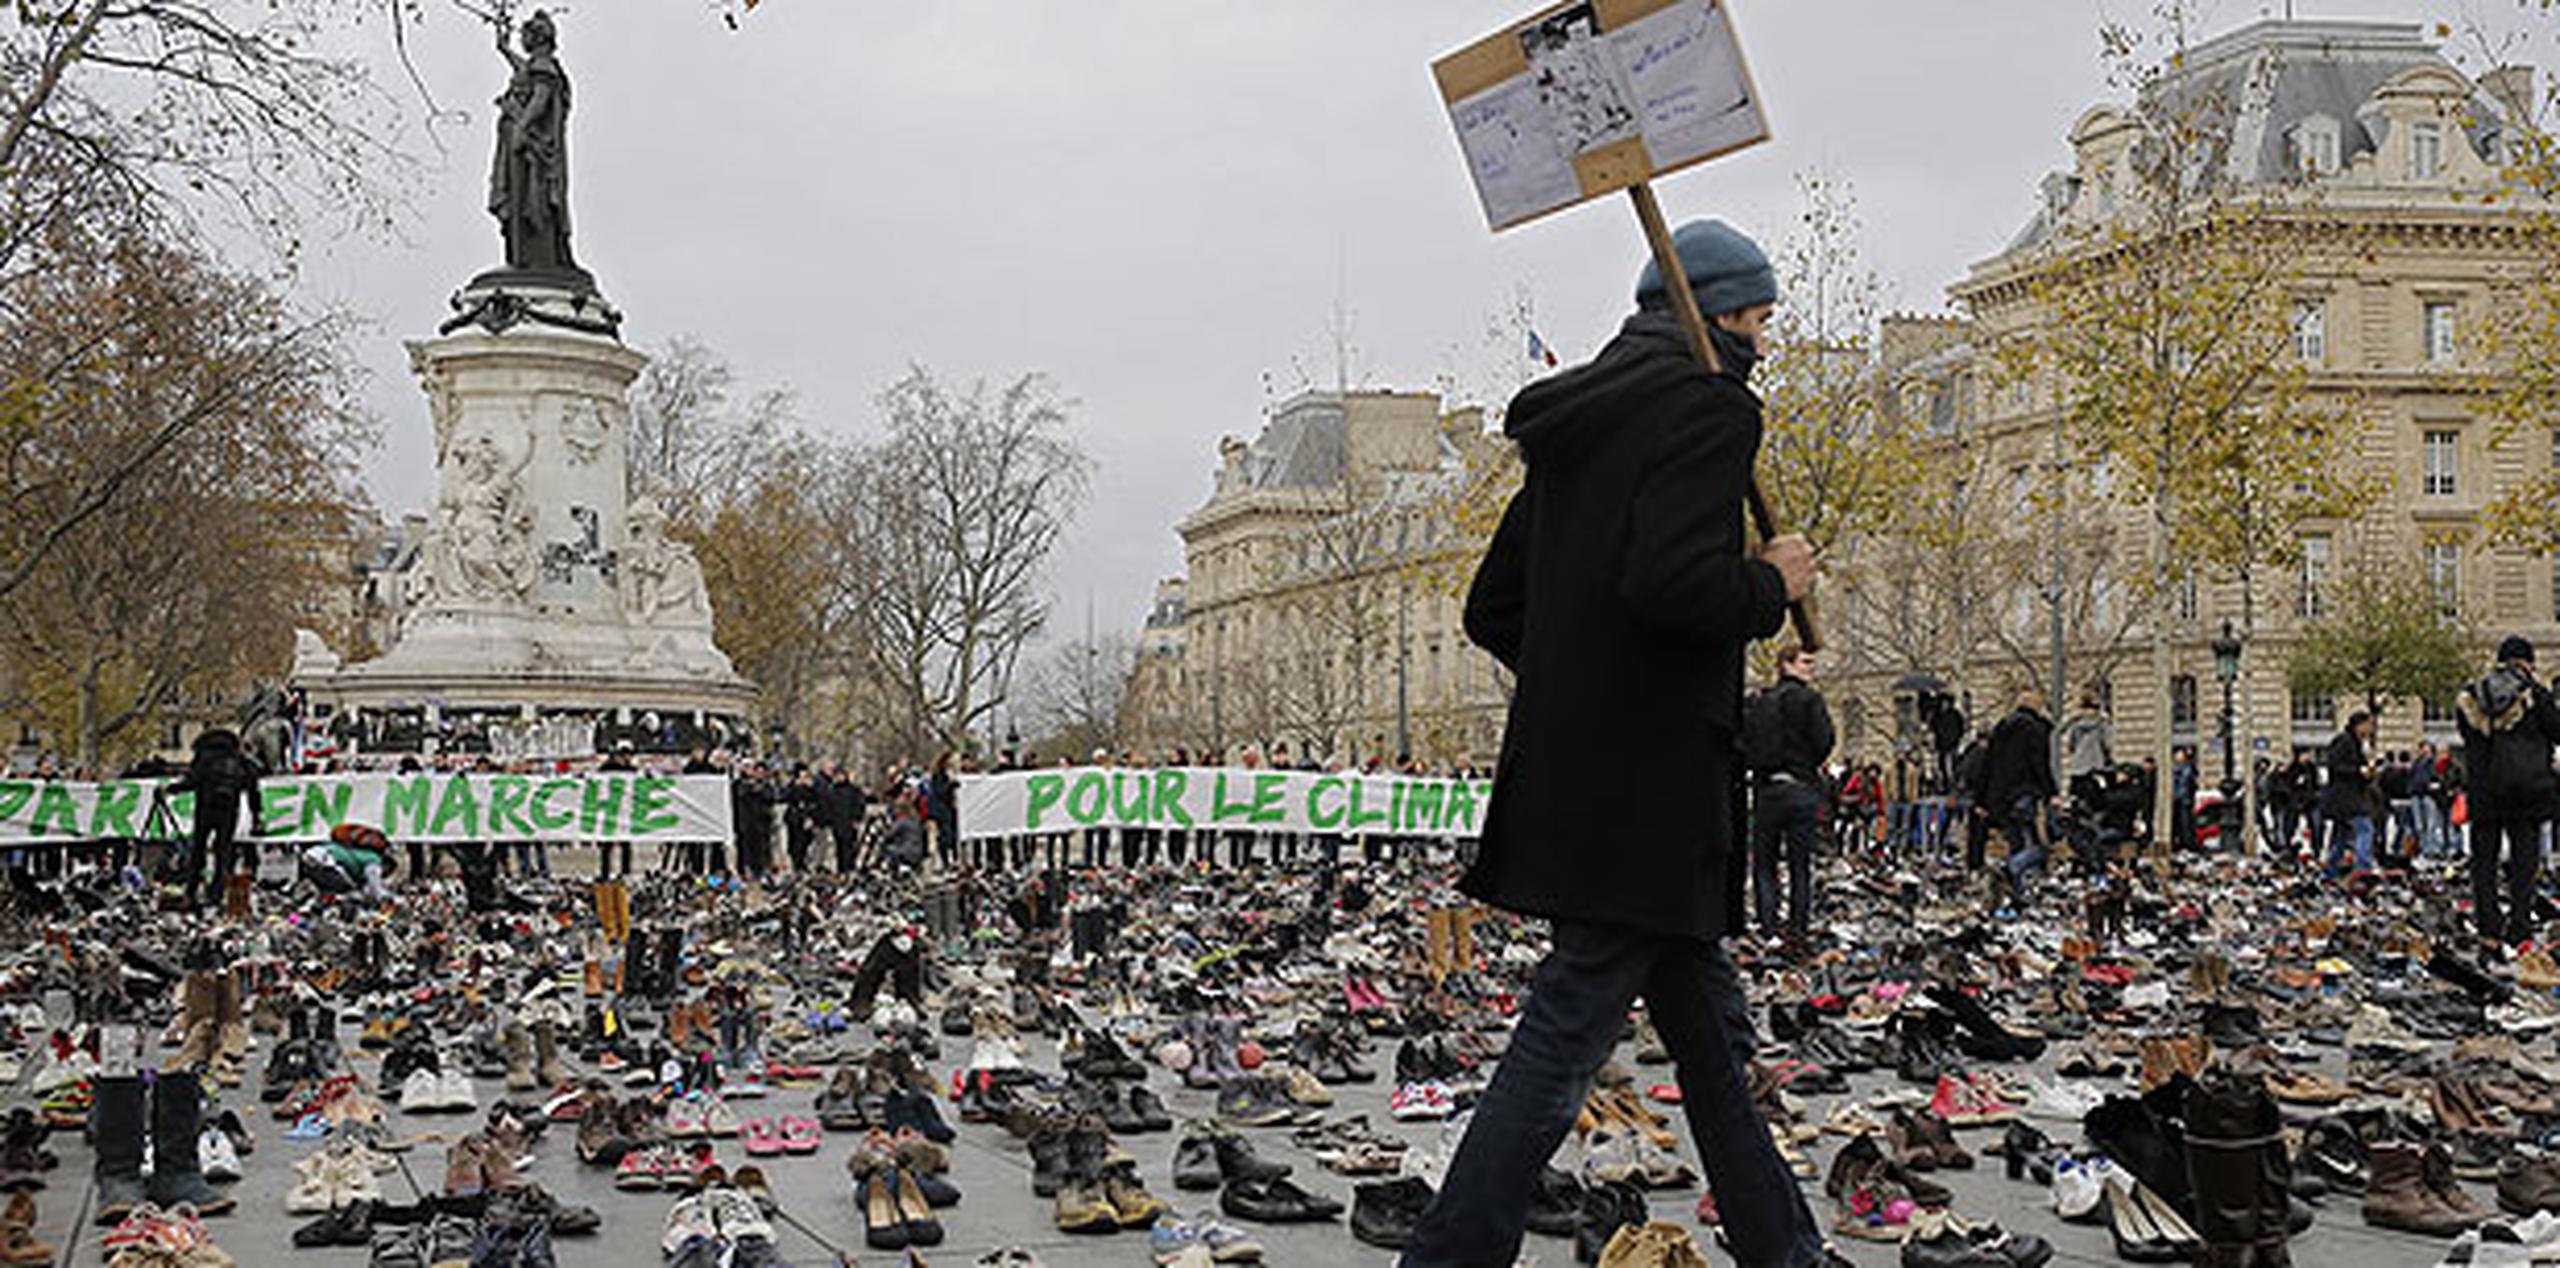 Activistas colocaron zapatos en la Plaza de la República para representar las limitaciones al derecho de manifestación. (AP/Laurent Cipriani)